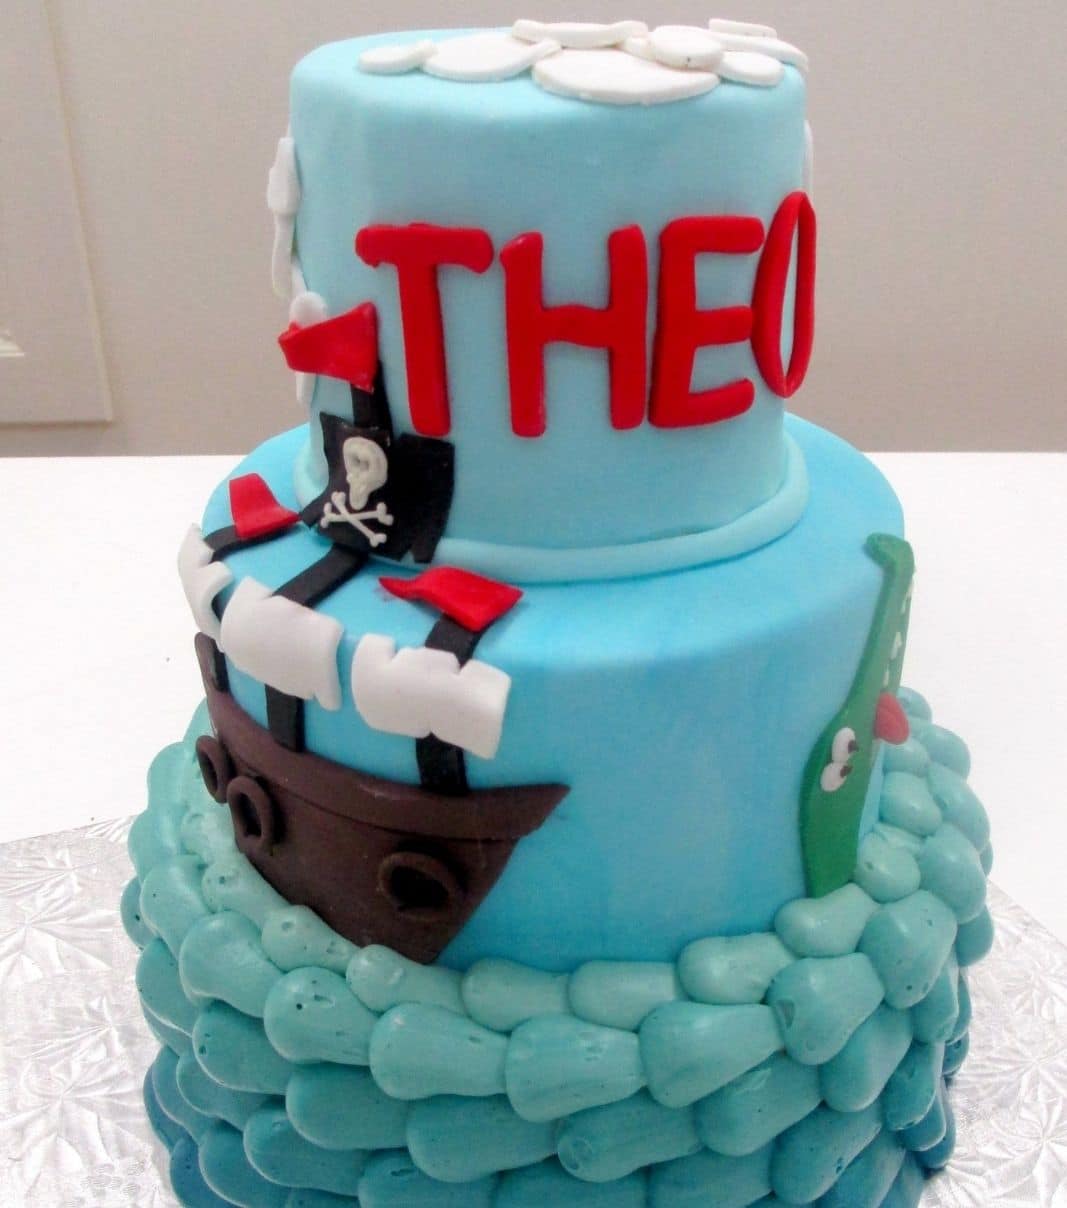 Gâteau d'anniversaire sur mesure de Théo: gâteau de 3 étages à thématique Peter Pan avec la base en couverture à la crème au beurre dégradée de bleu à turquoise, le 2e et 3e étage avec une couverture en fondant et décoré d'un bateau de pirate et d'un crocodile 2D en fondant.